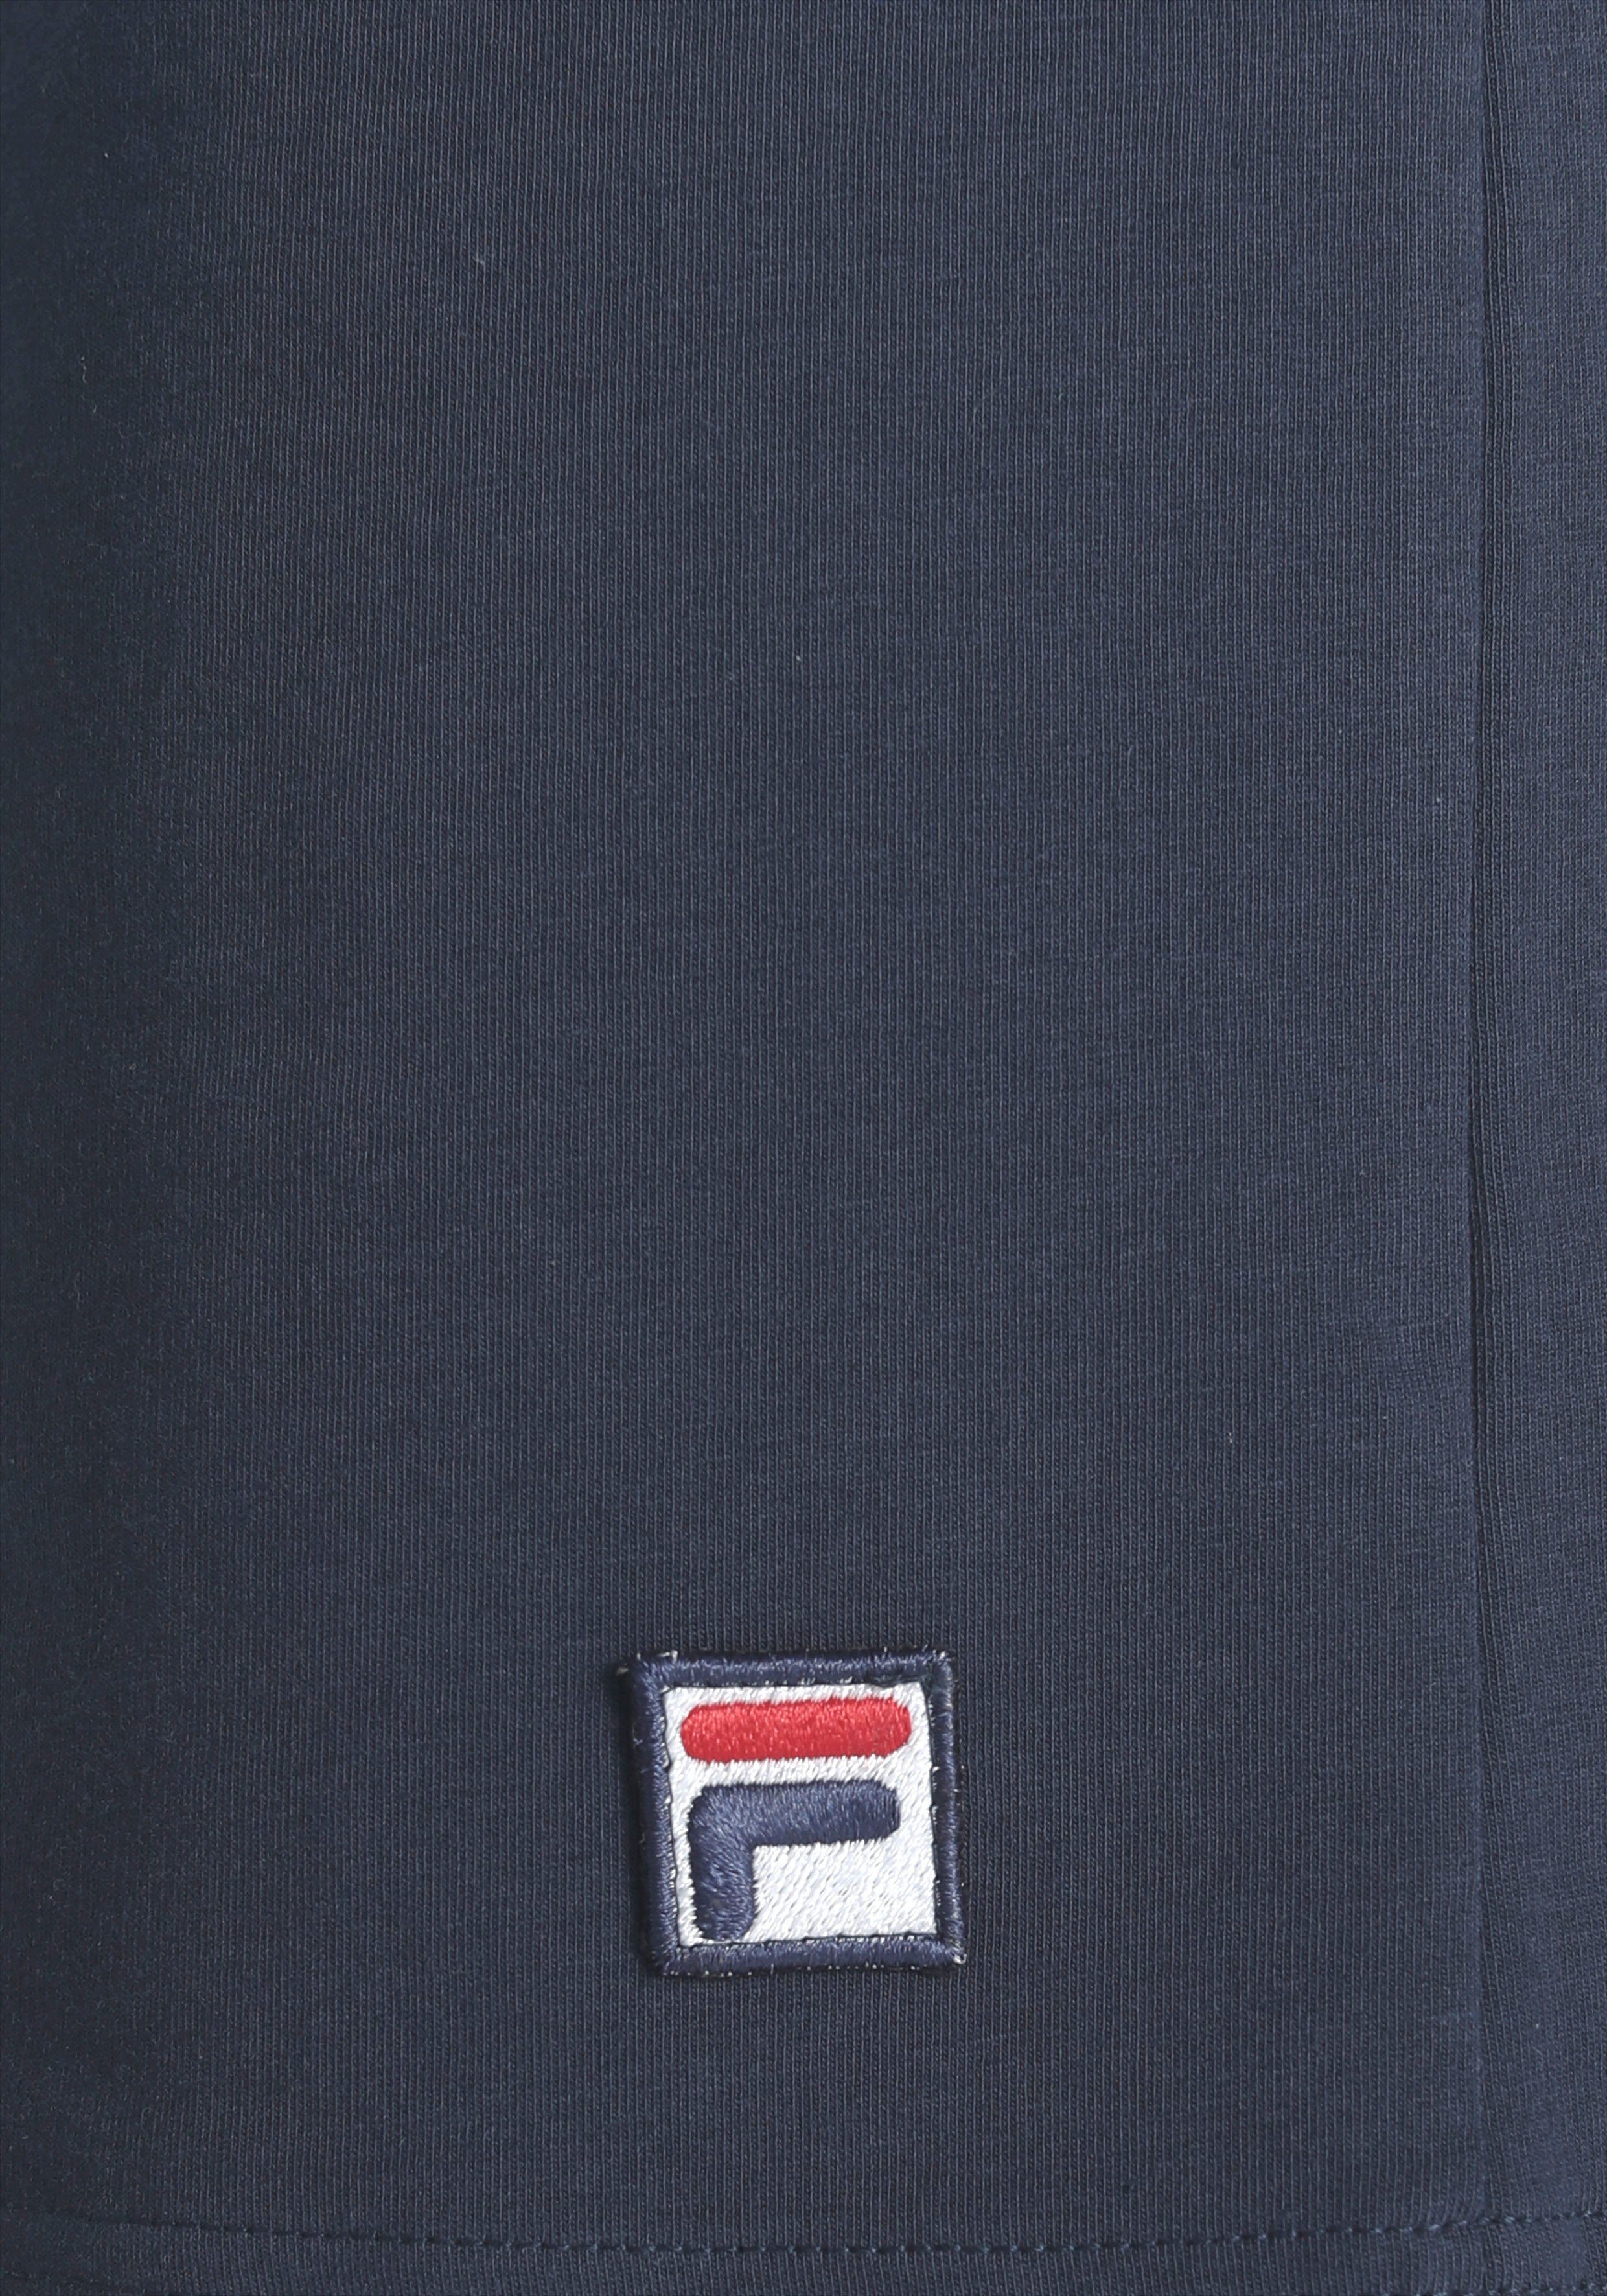 Fila Schlafanzug (Set, 2 tlg) in Kontrastfarben Markenlogo mit Details